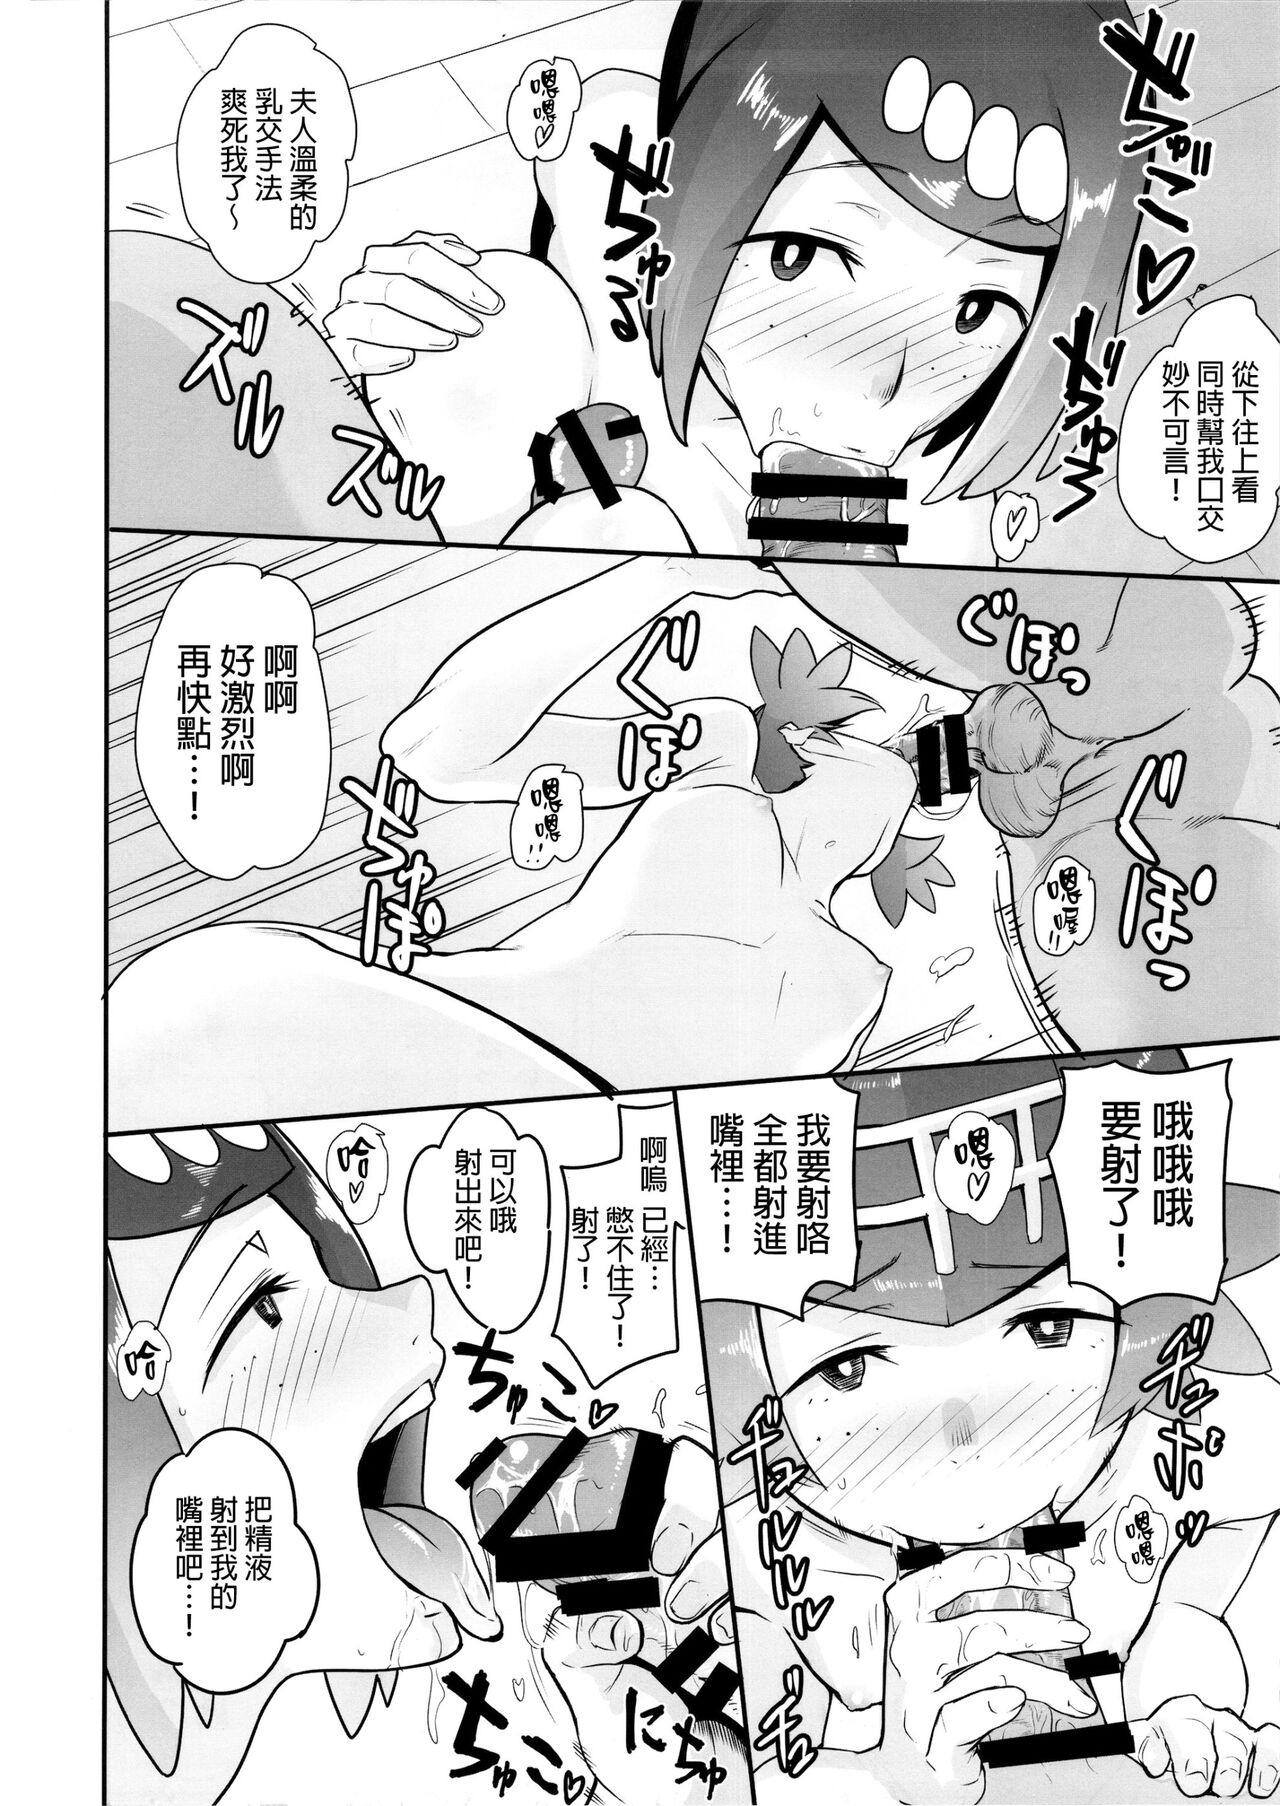 Passionate Alola no Yoru no Sugata 1-6 + Galar no Yoru no Sugata - Pokemon | pocket monsters Family - Page 11